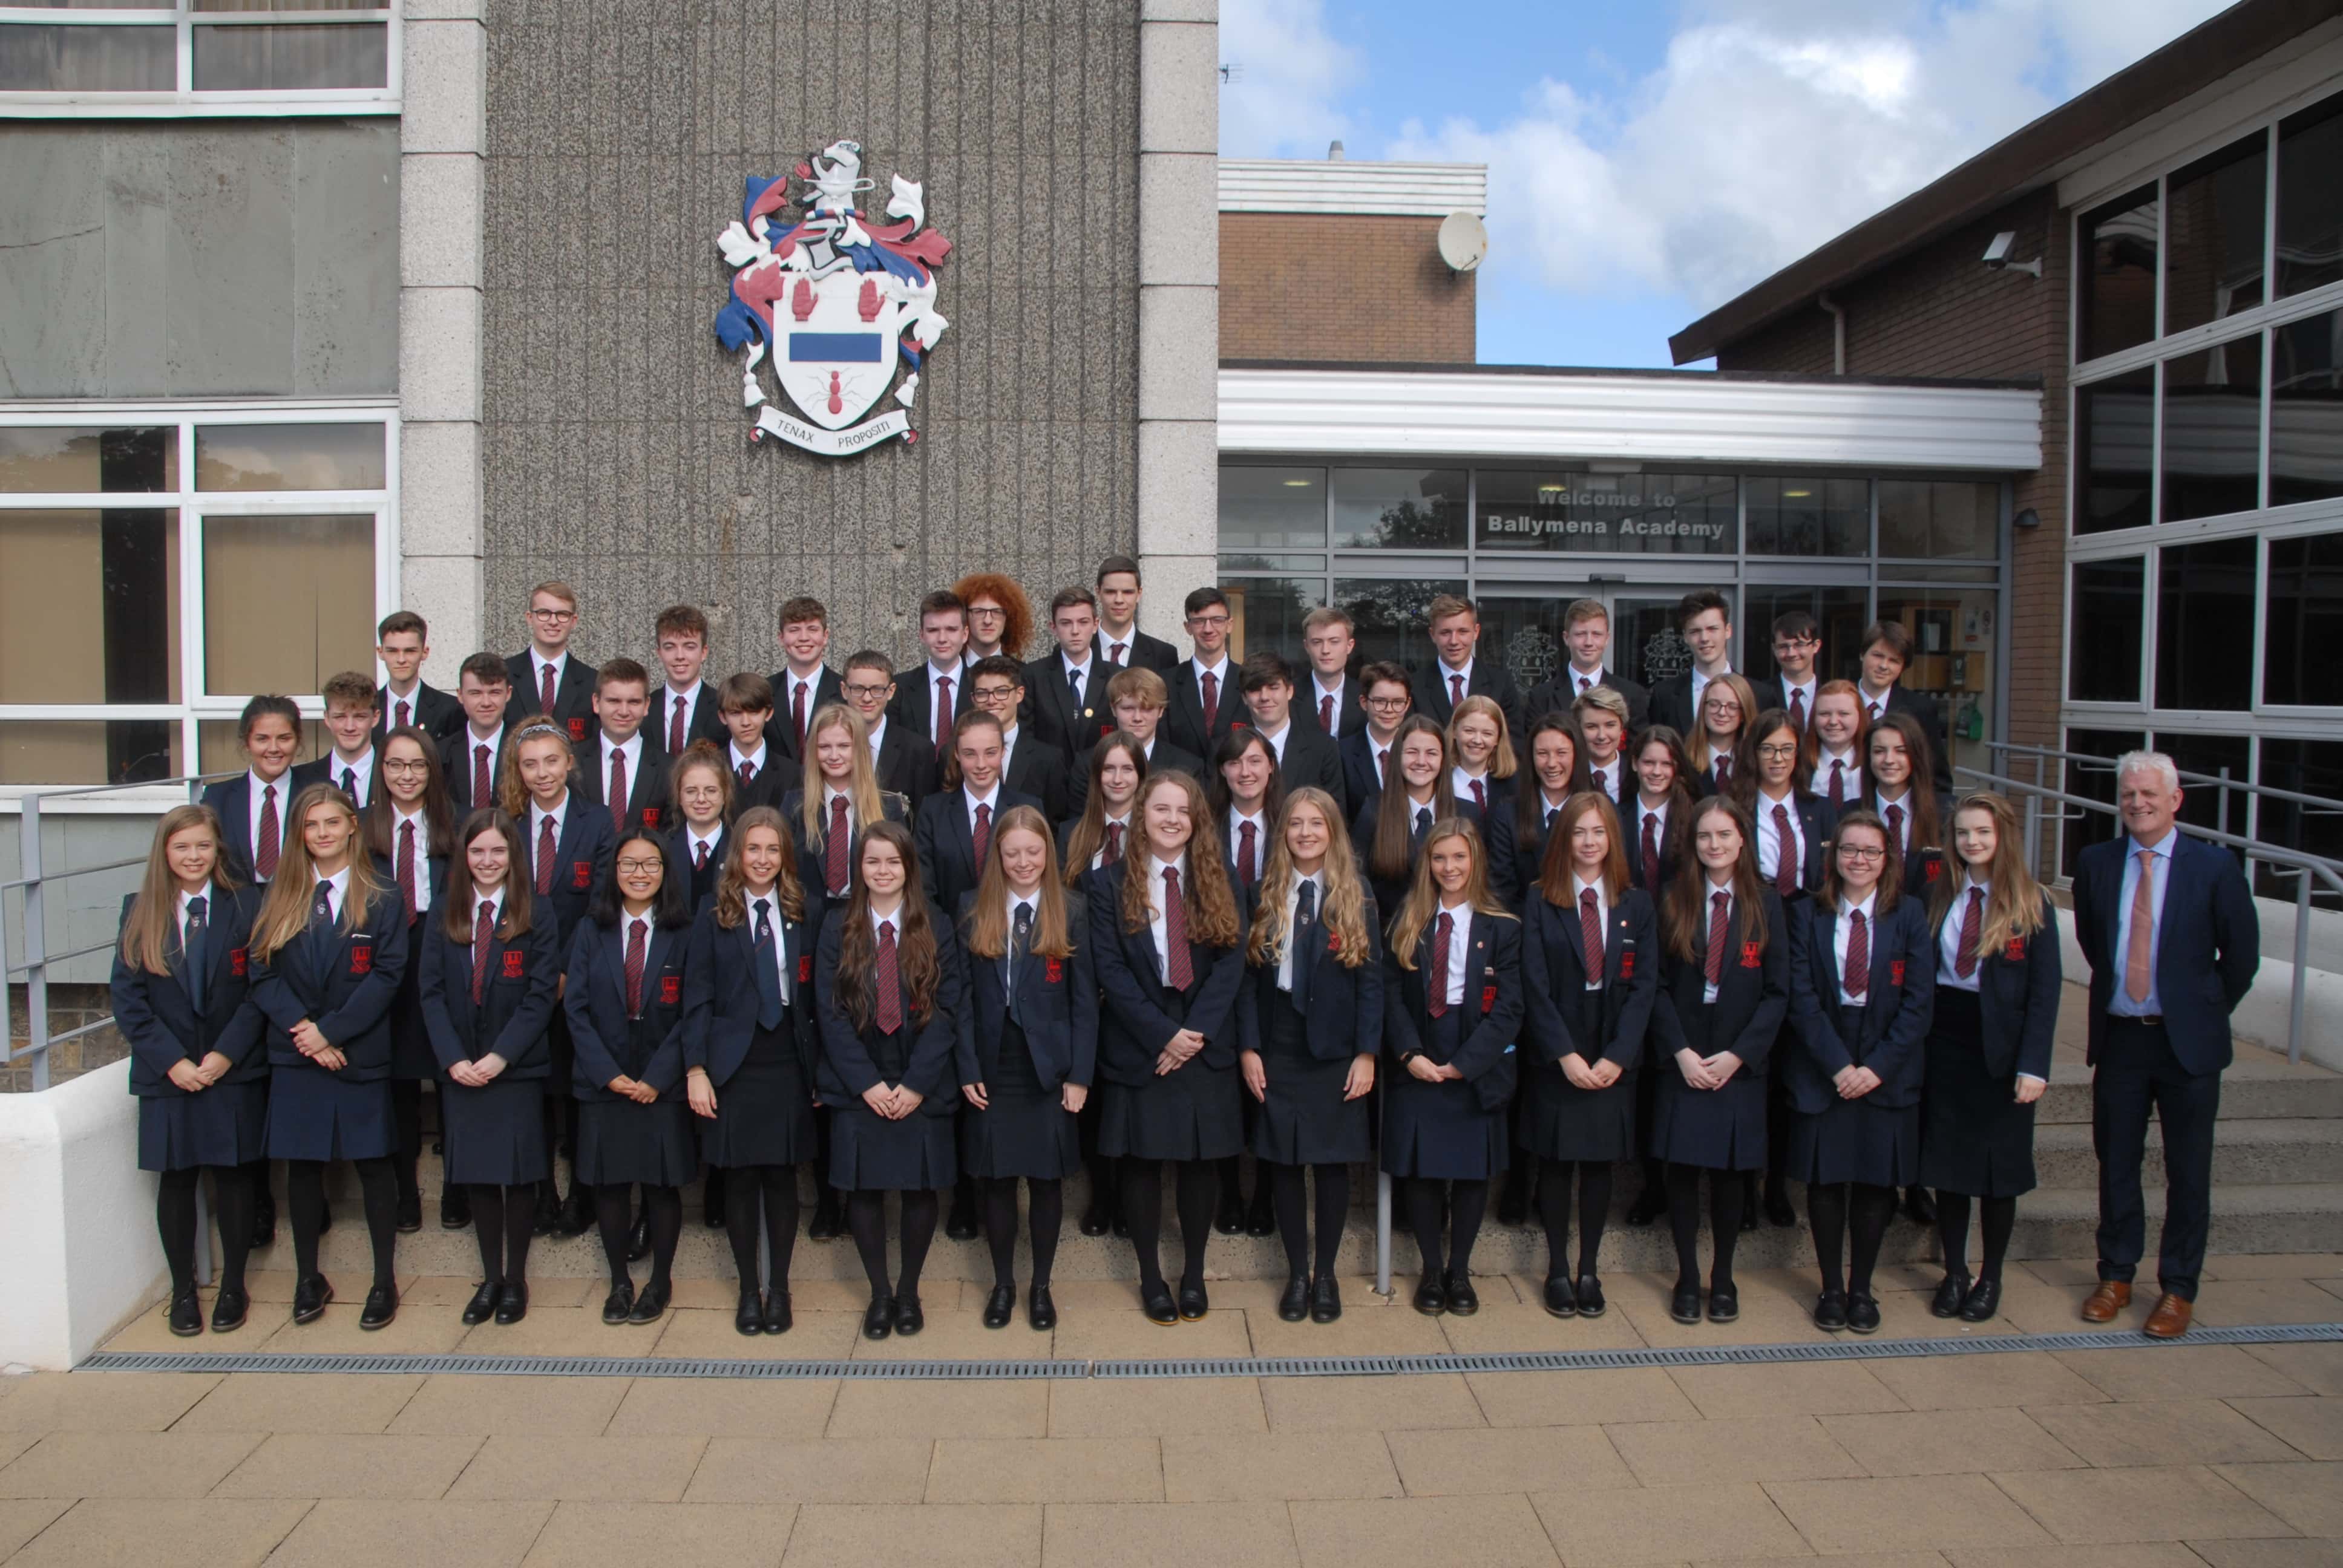 Ballymena Academy Pupils' “Remarkable” GCSE Success – Ballymena Academy